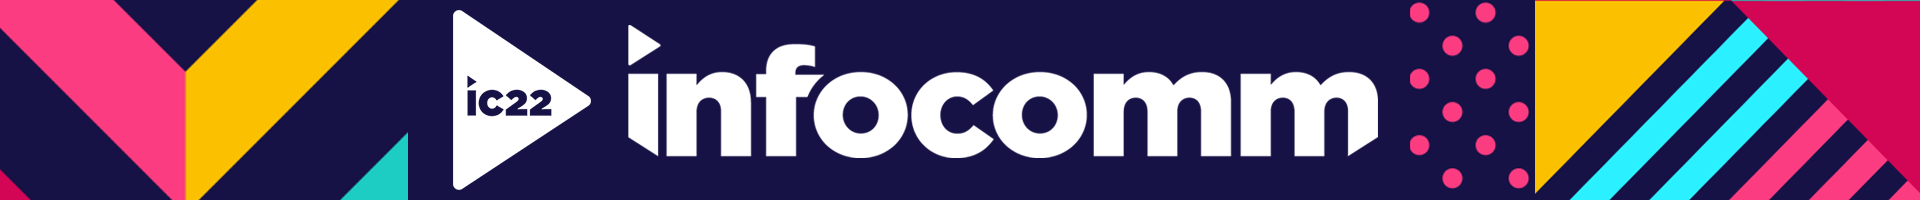 InfoComm 2022 Event Banner